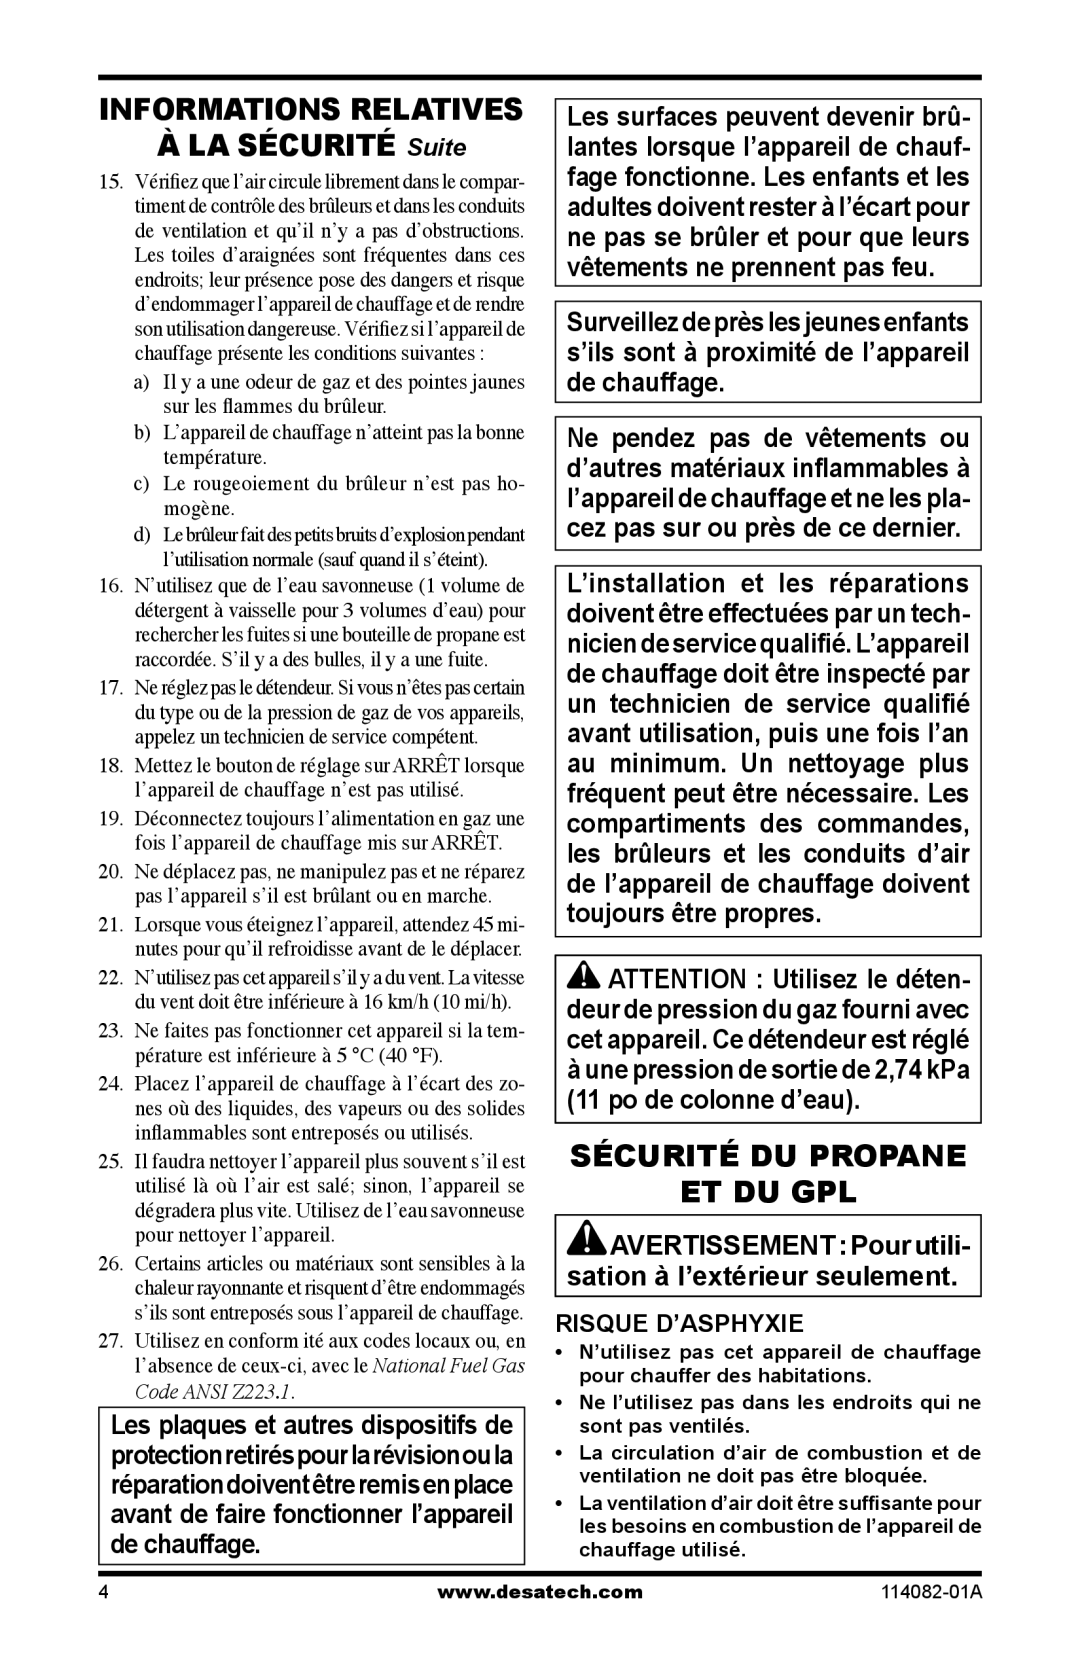 Desa SPC-21PHTSA owner manual À LA SÉCURITÉ Suite, Sécurité Du Propane Et Du Gpl, Informations Relatives, Risque D’Asphyxie 